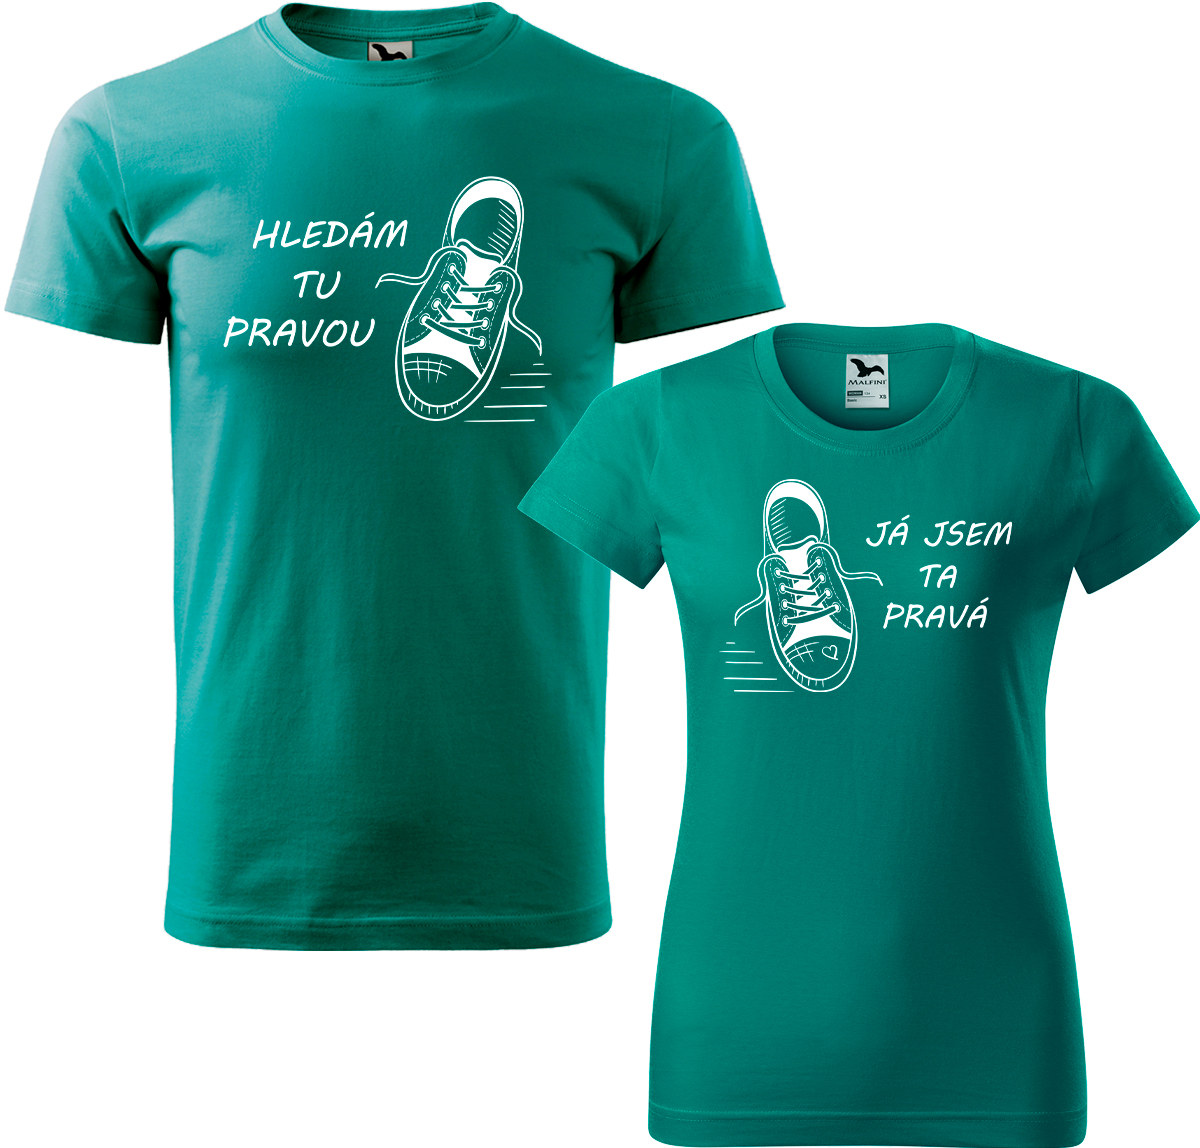 Trička pro páry - Kecky Barva: Emerald (19), Velikost dámské tričko: XL, Velikost pánské tričko: XL